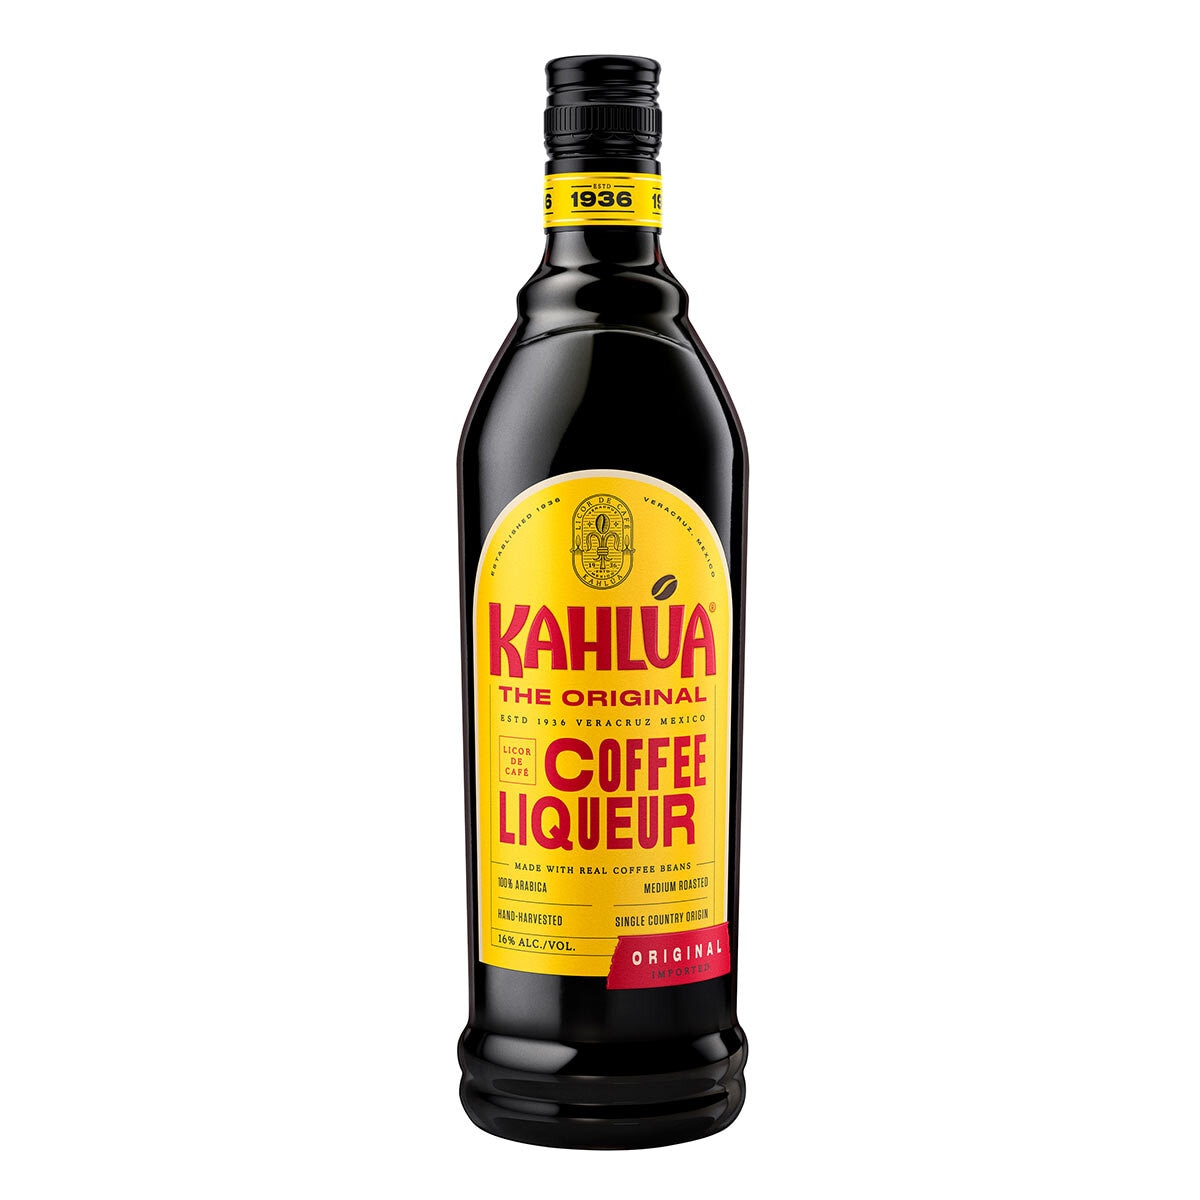 Kahlua Coffee Liquer Bottle image